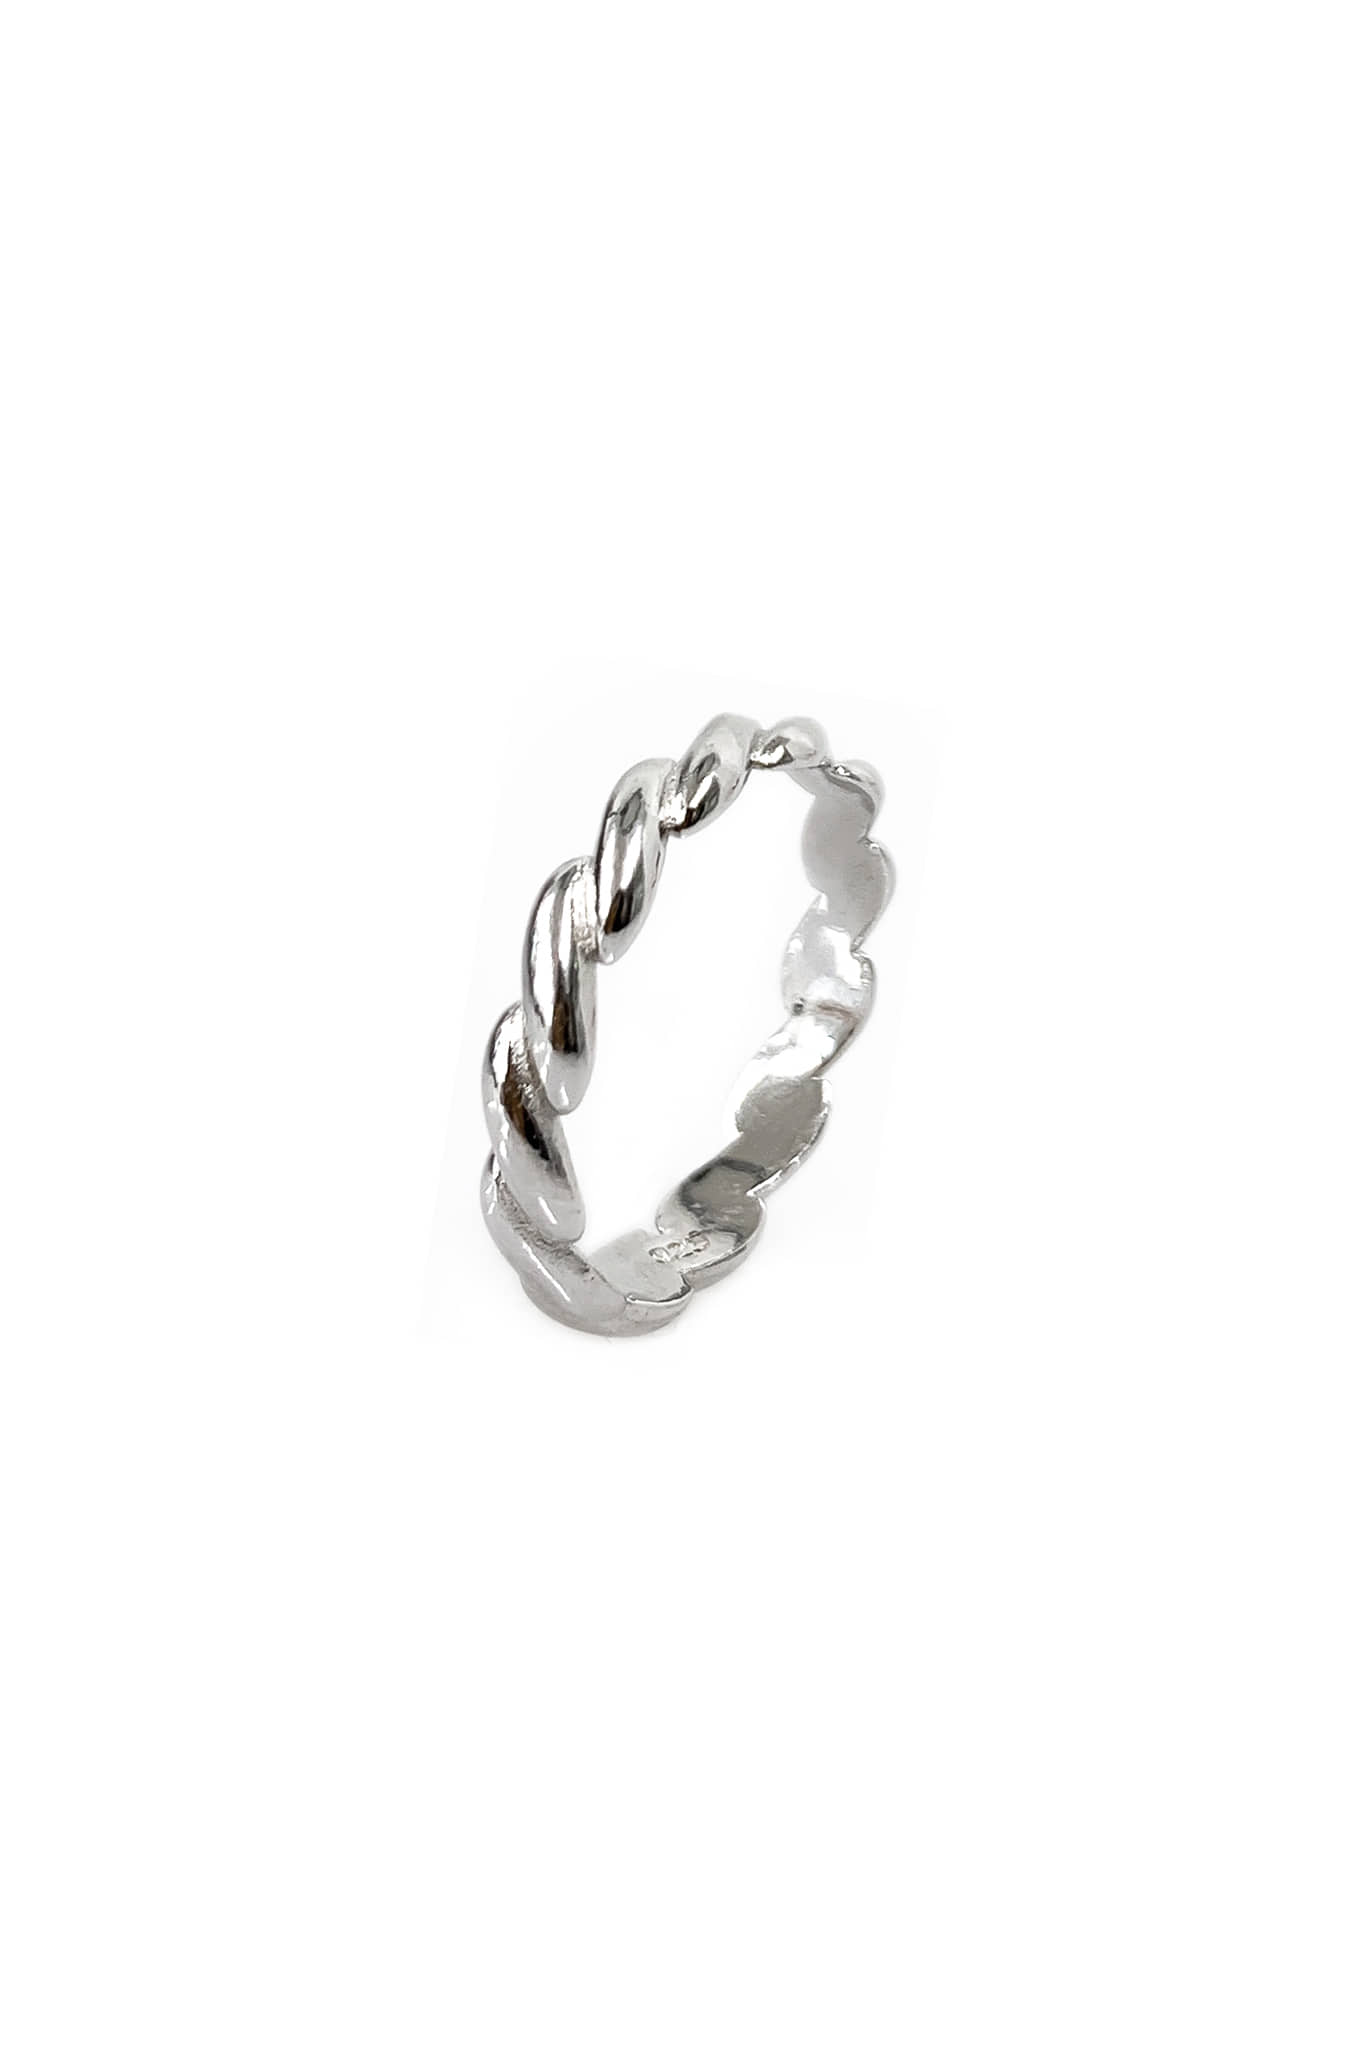 [silver925] 미니 턴 반지